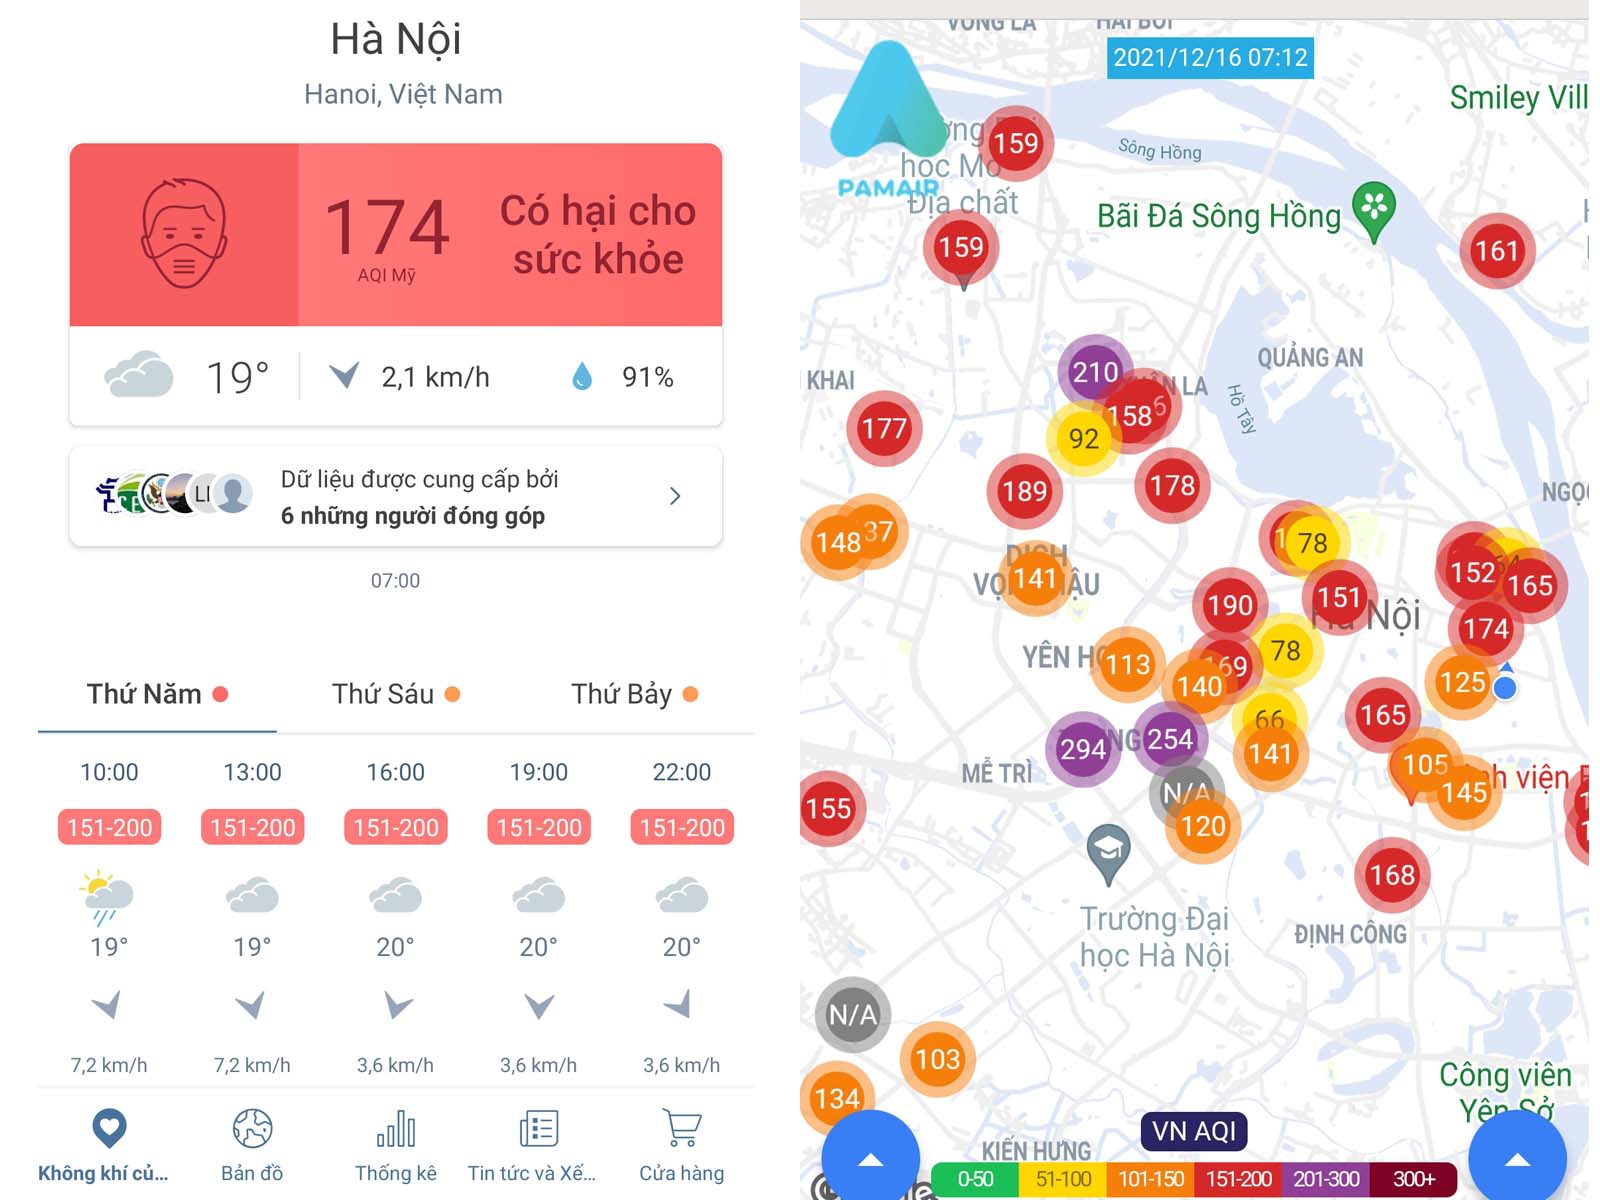 Chỉ số ô nhiễm cao, tình trạng bụi PM2.5 ở Hà Nội ở mức như thế nào? - 2